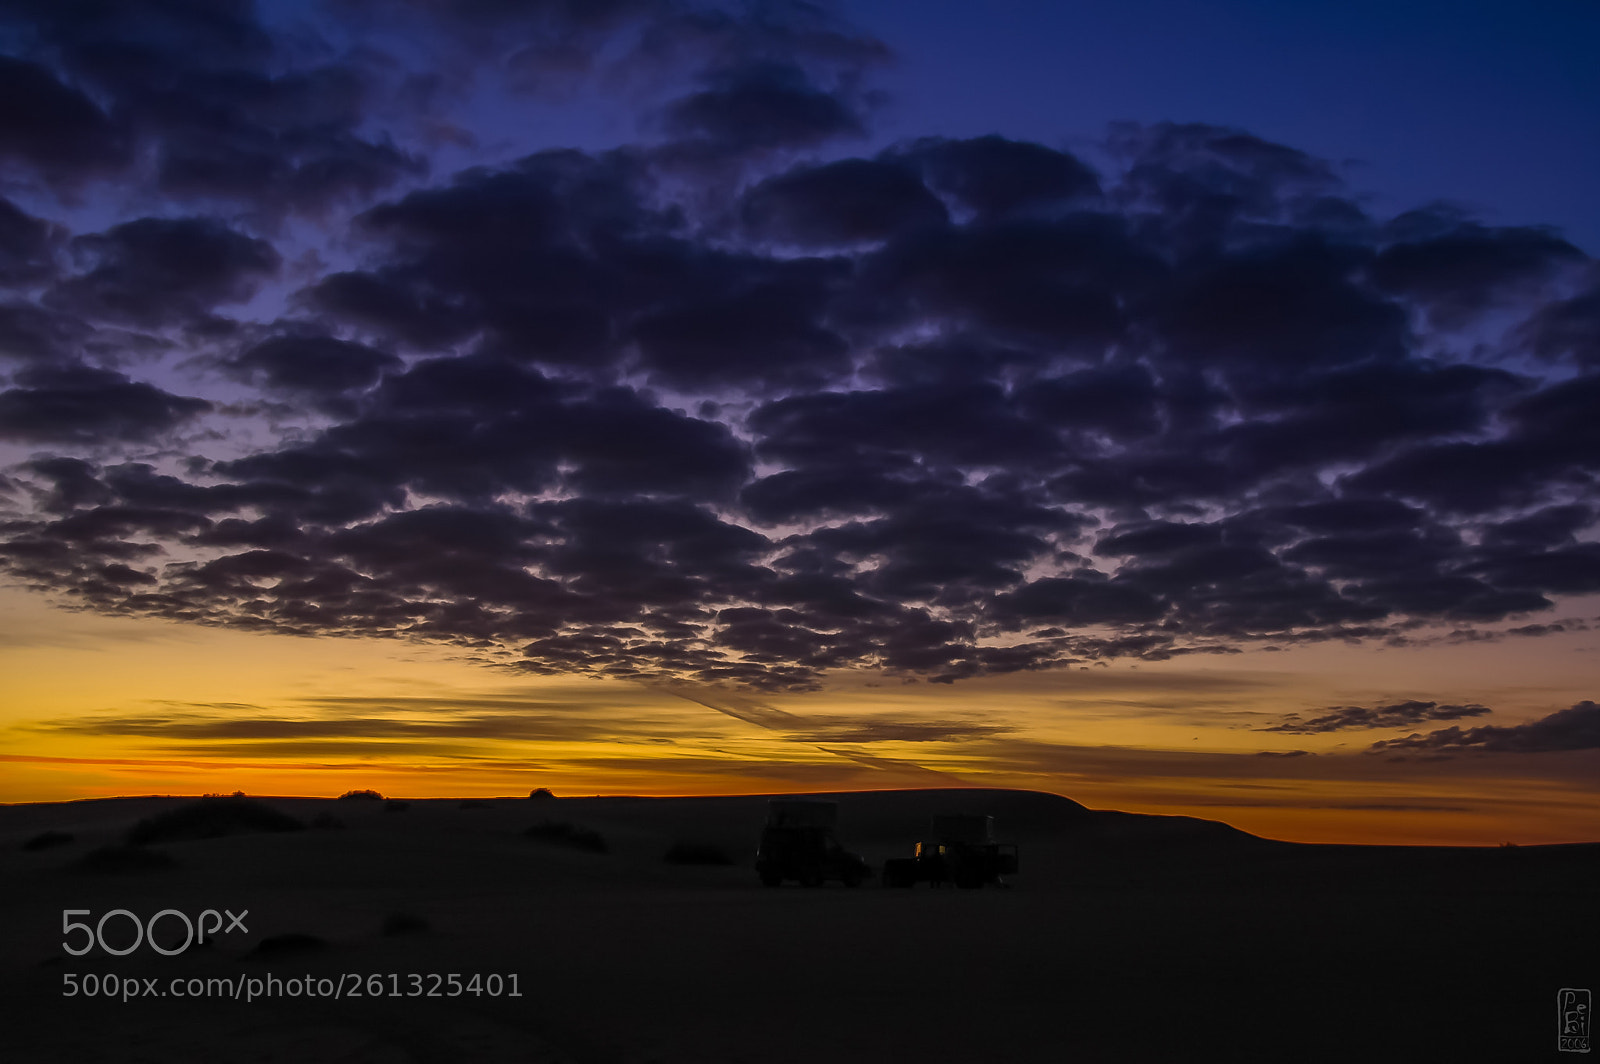 Nikon D70 sample photo. Sahara sunrise photography